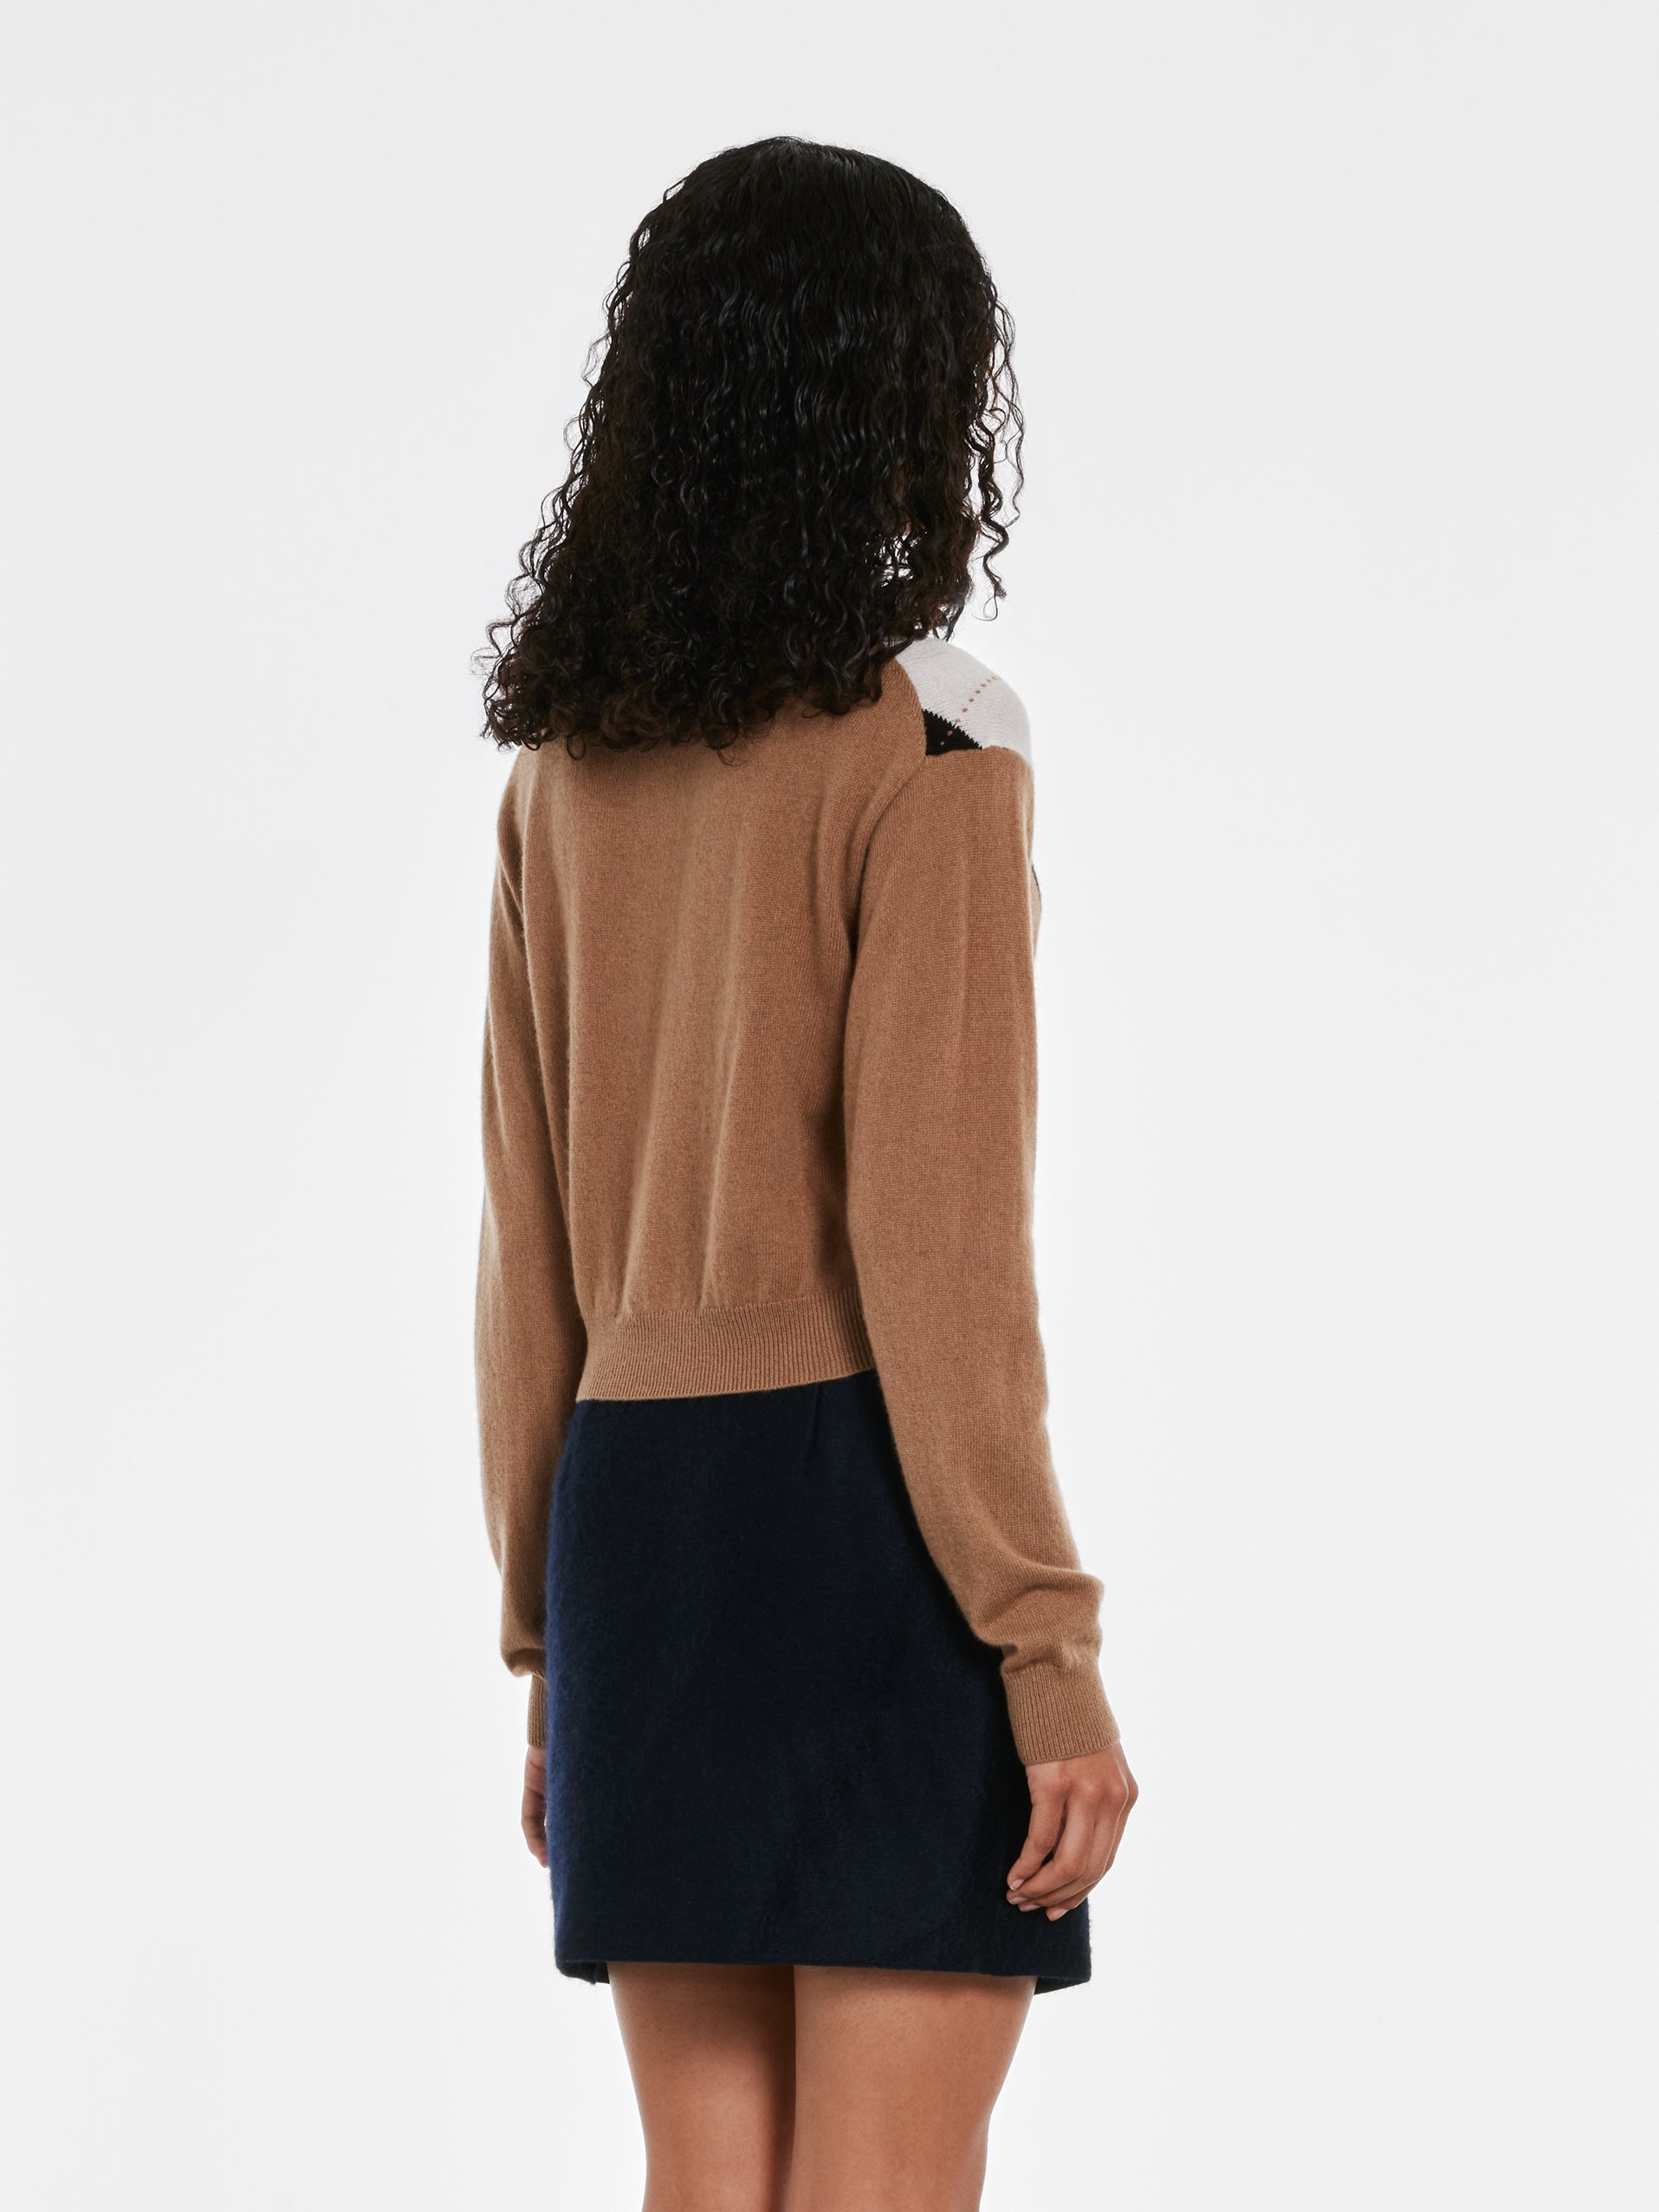 Prada - Women’s Cashmere Polo Shirt - (Camel/Black) view 3